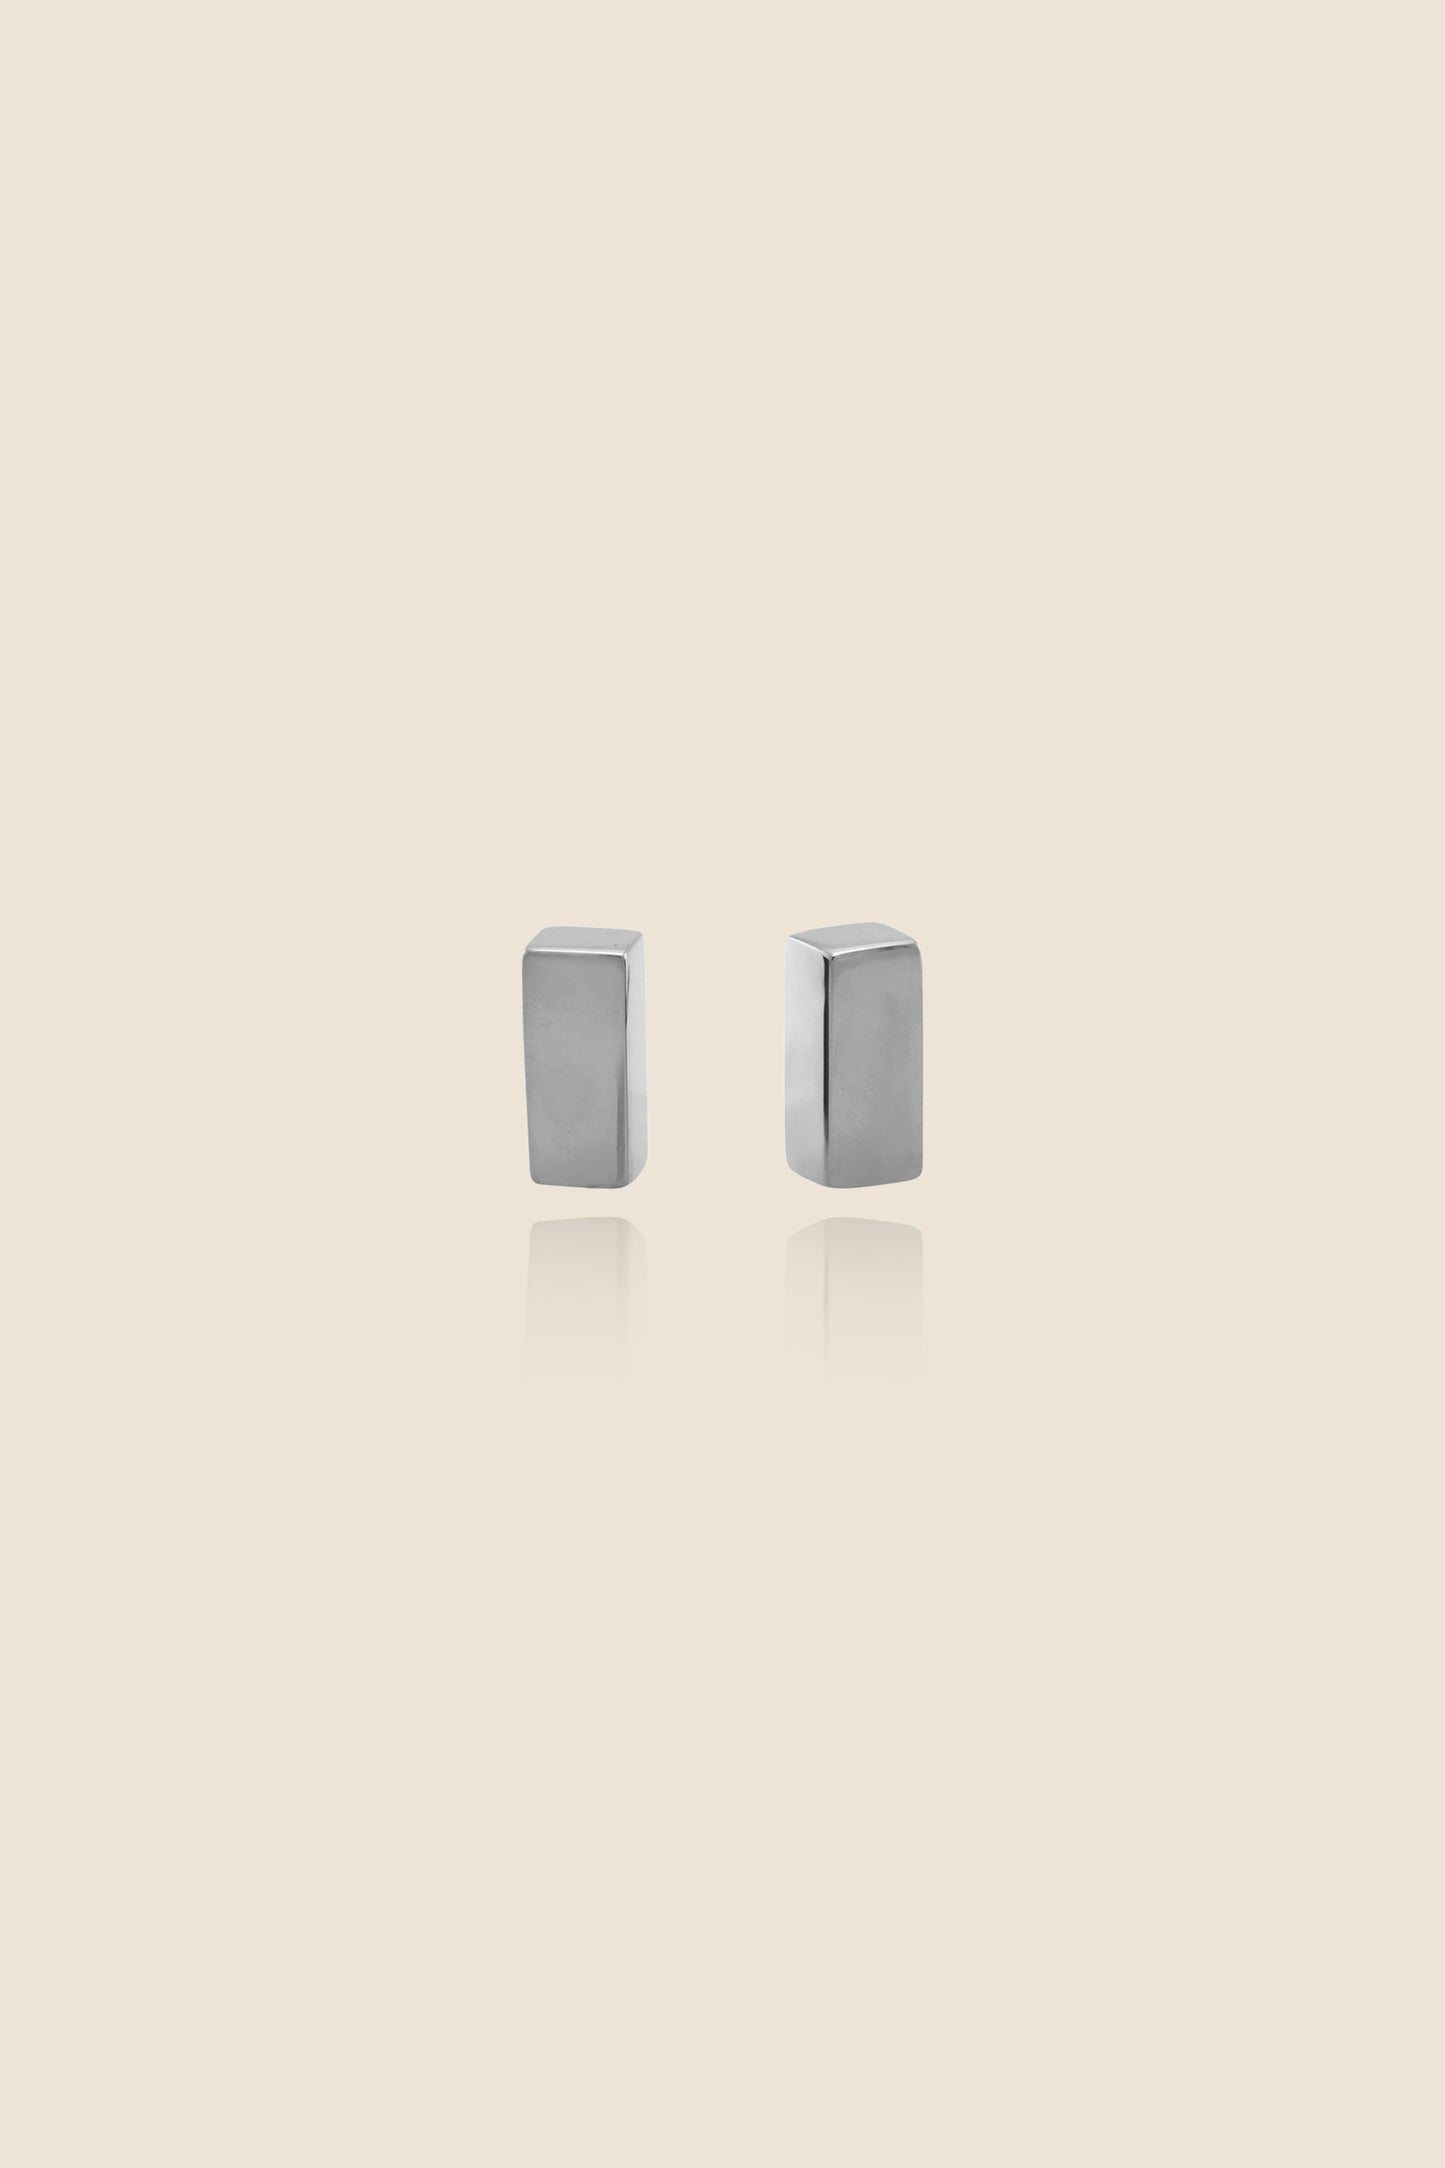 Pillar Stud Earrings (Pair)